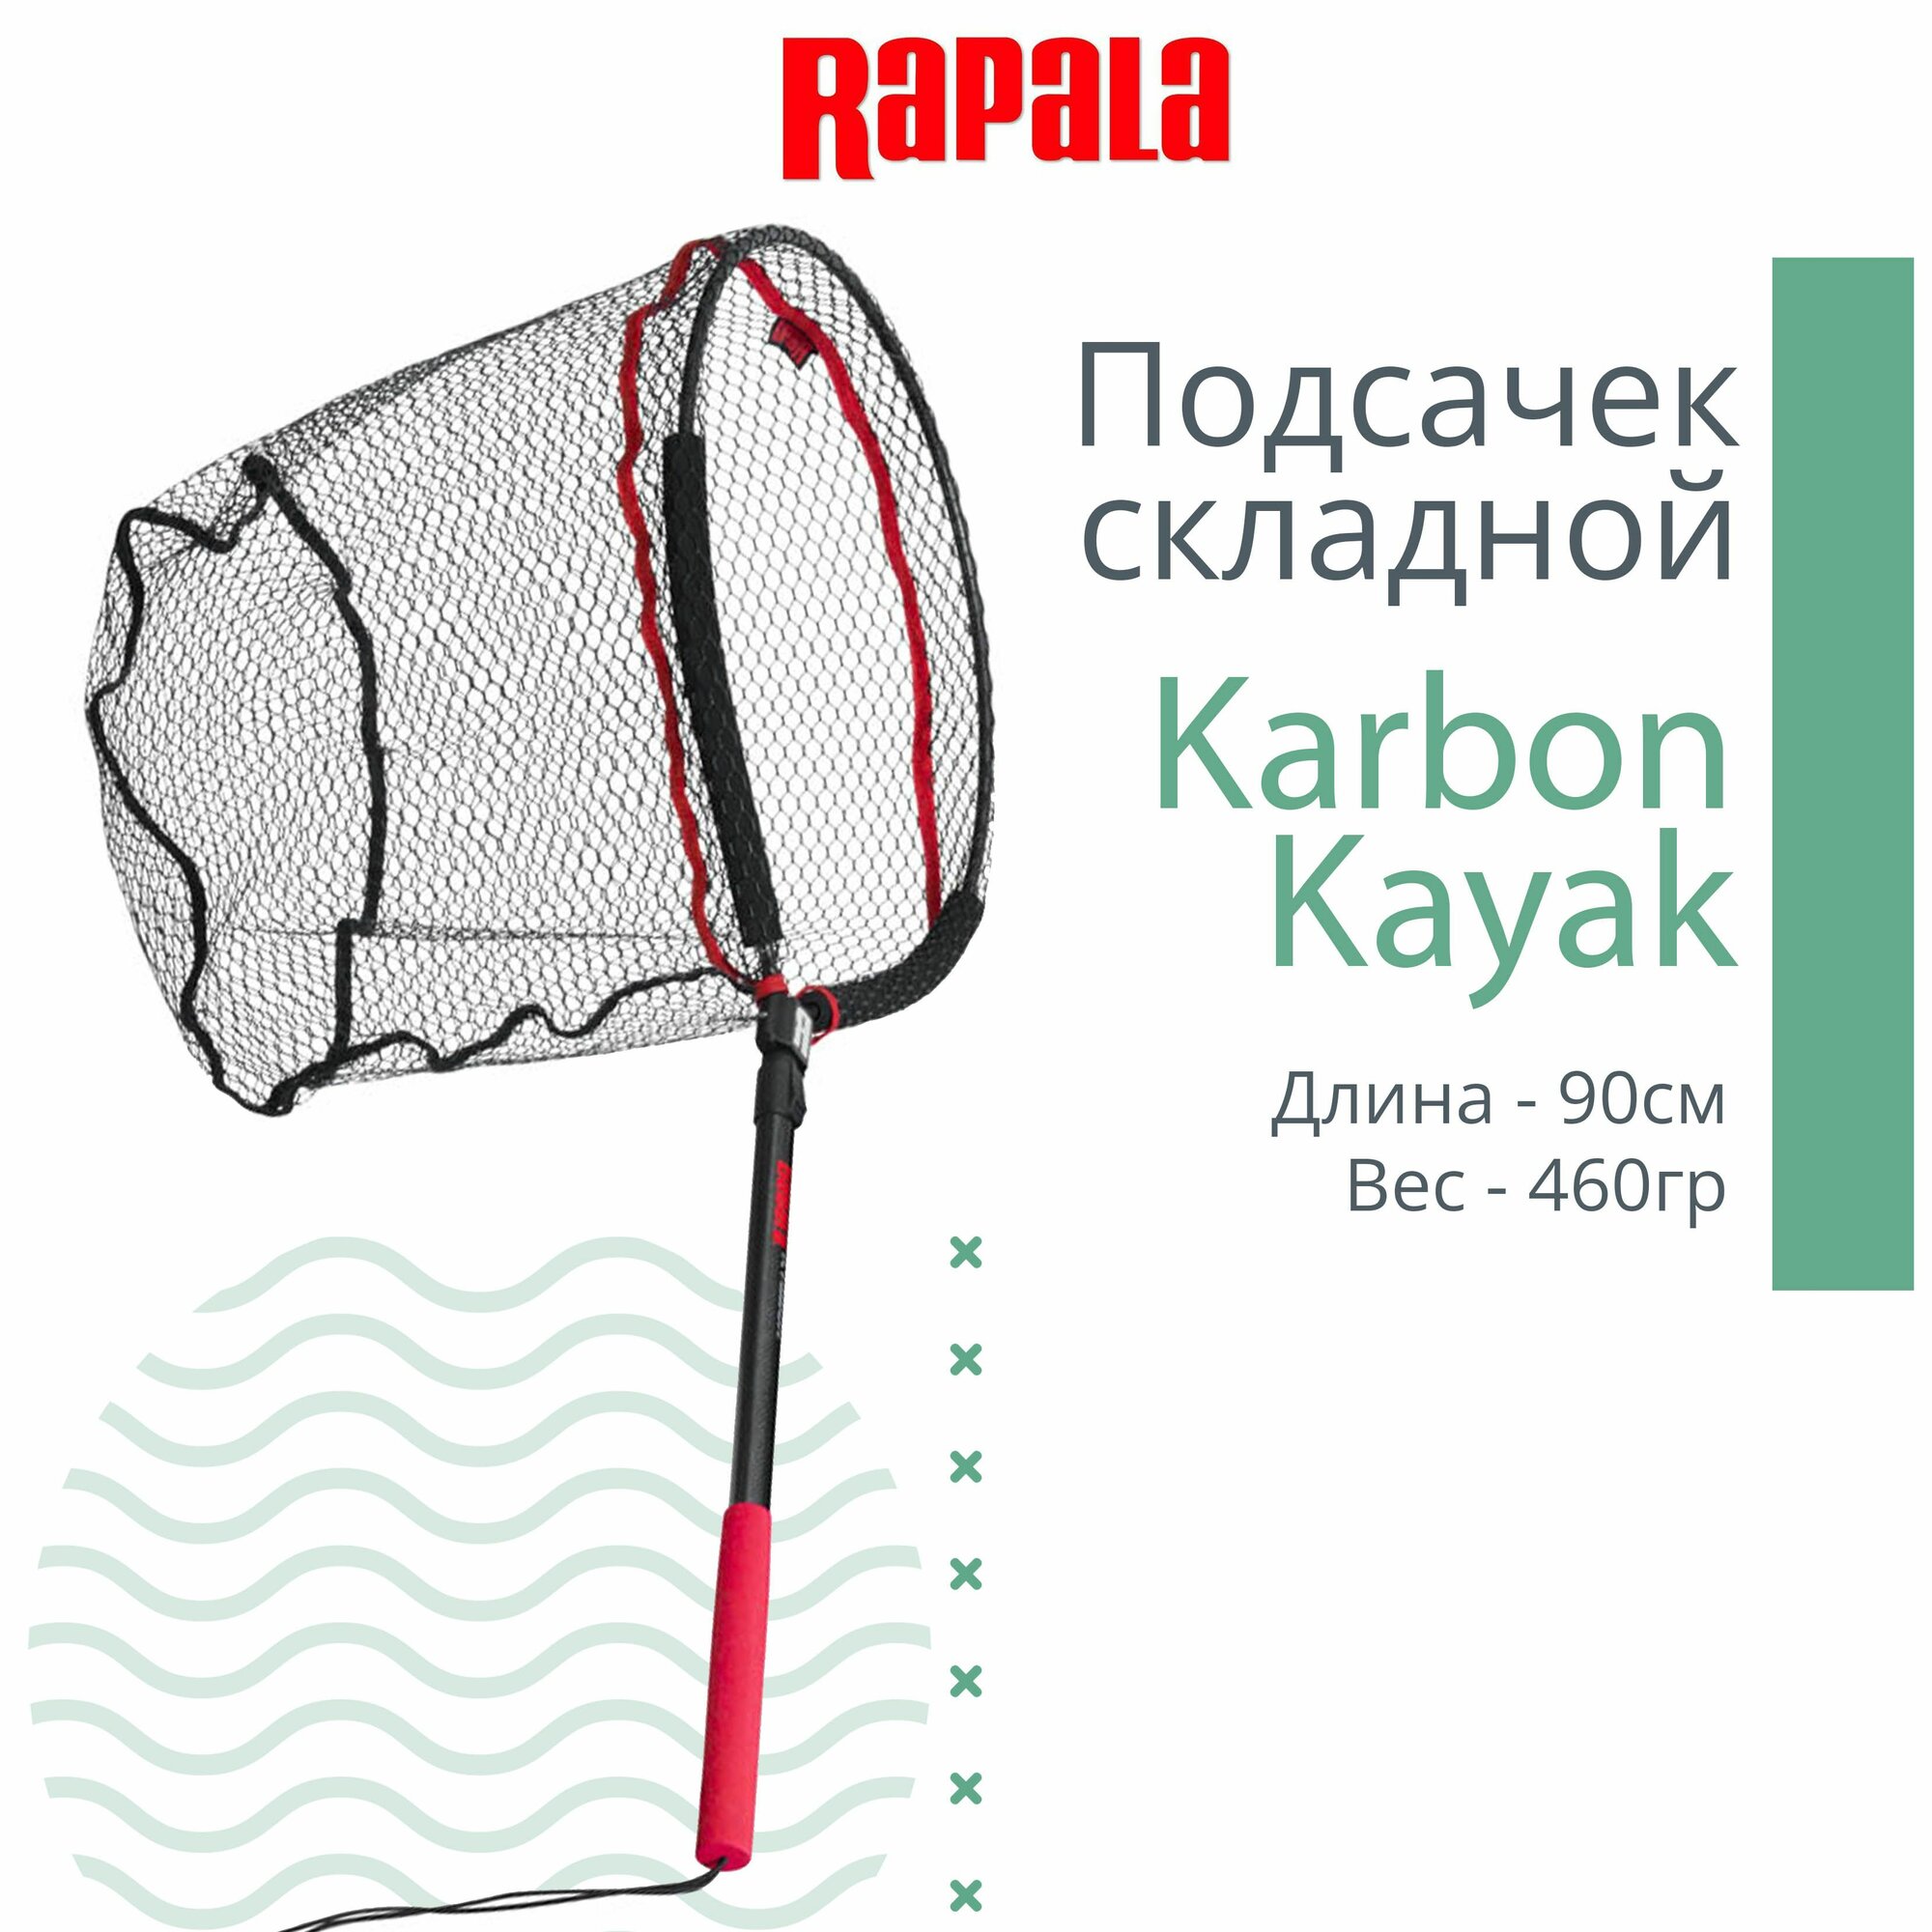 Подсачек рыболовный RAPALA Karbon Kayak, длина 90 см, вес 460 гр